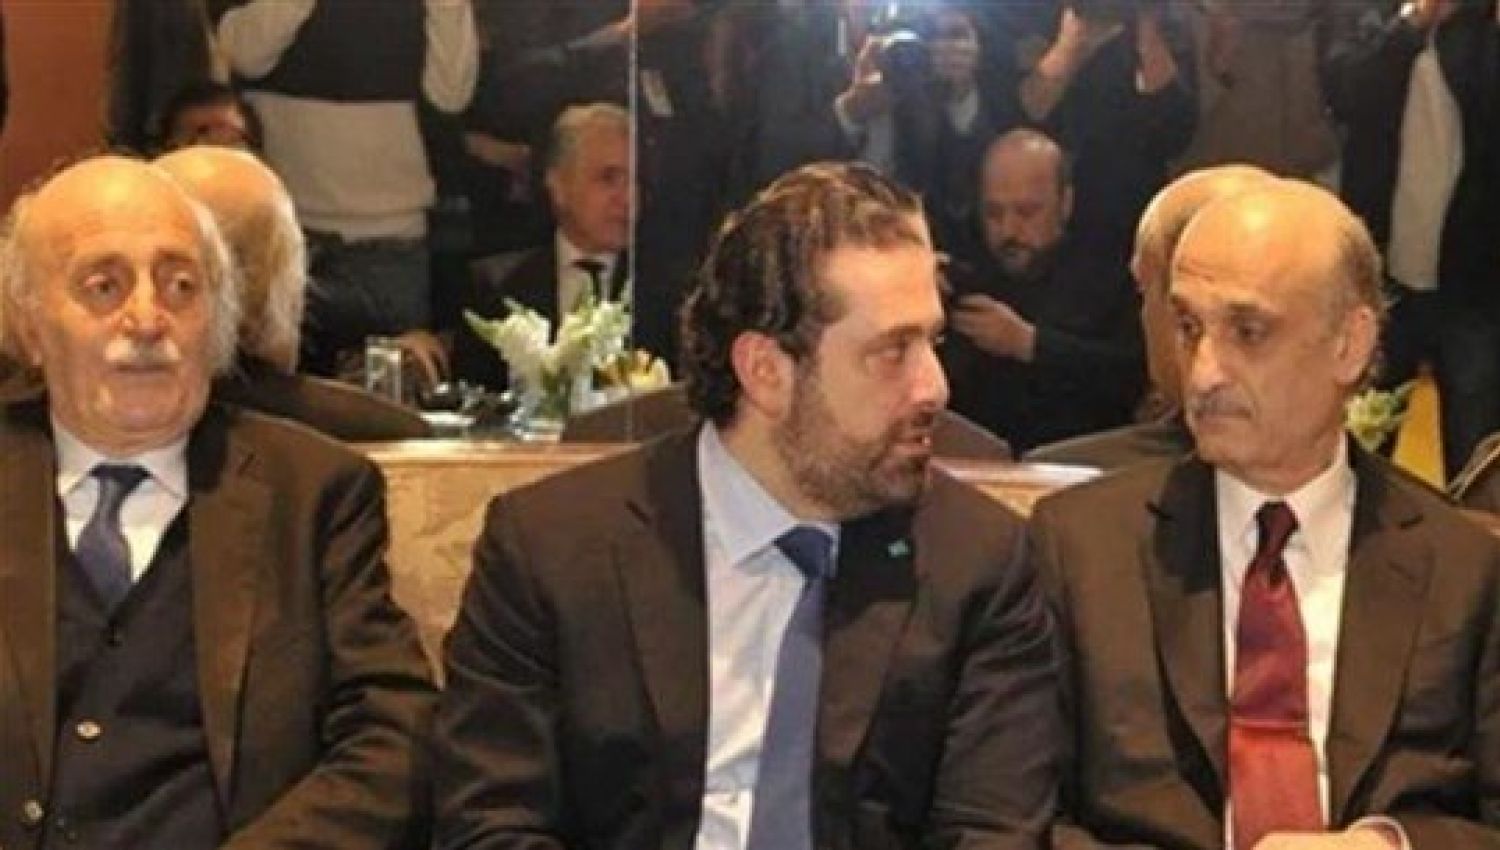 التحالفات الانتخابية: "جعجع - جنبلاط - الحريري".. ورابعهما المصلحة